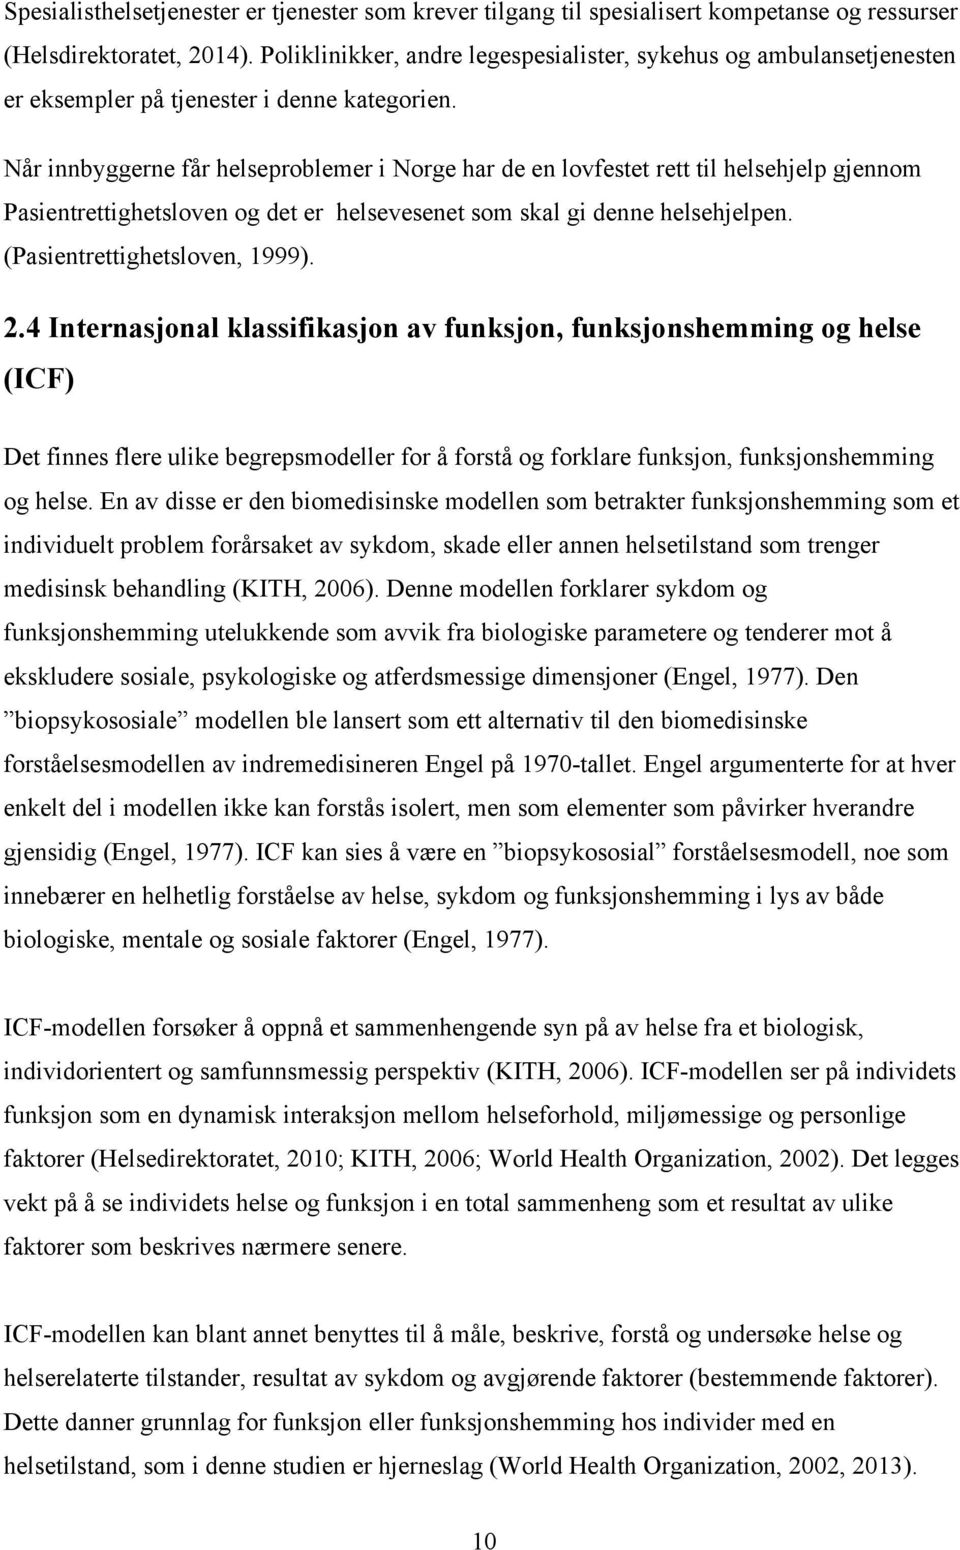 Når innbyggerne får helseproblemer i Norge har de en lovfestet rett til helsehjelp gjennom Pasientrettighetsloven og det er helsevesenet som skal gi denne helsehjelpen. (Pasientrettighetsloven, 1999).